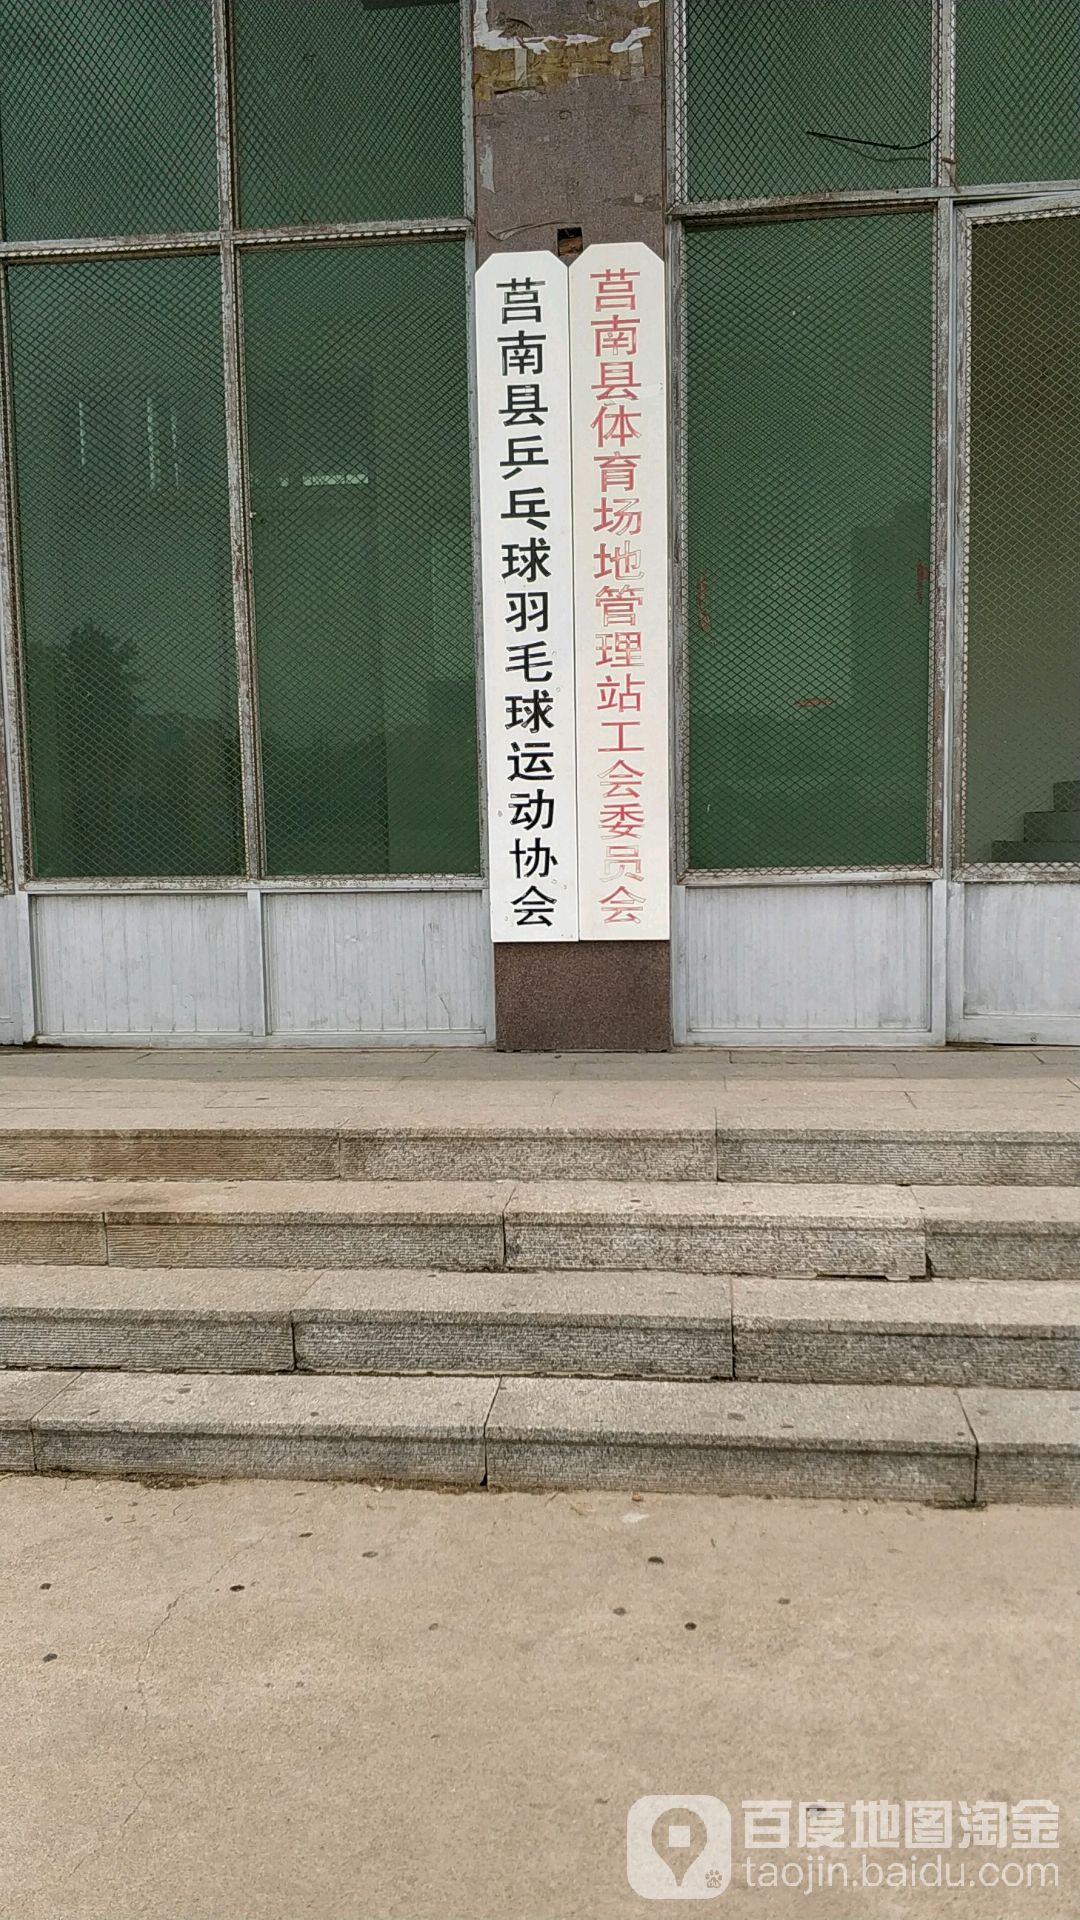 莒南县乒乓球羽毛球运动协会